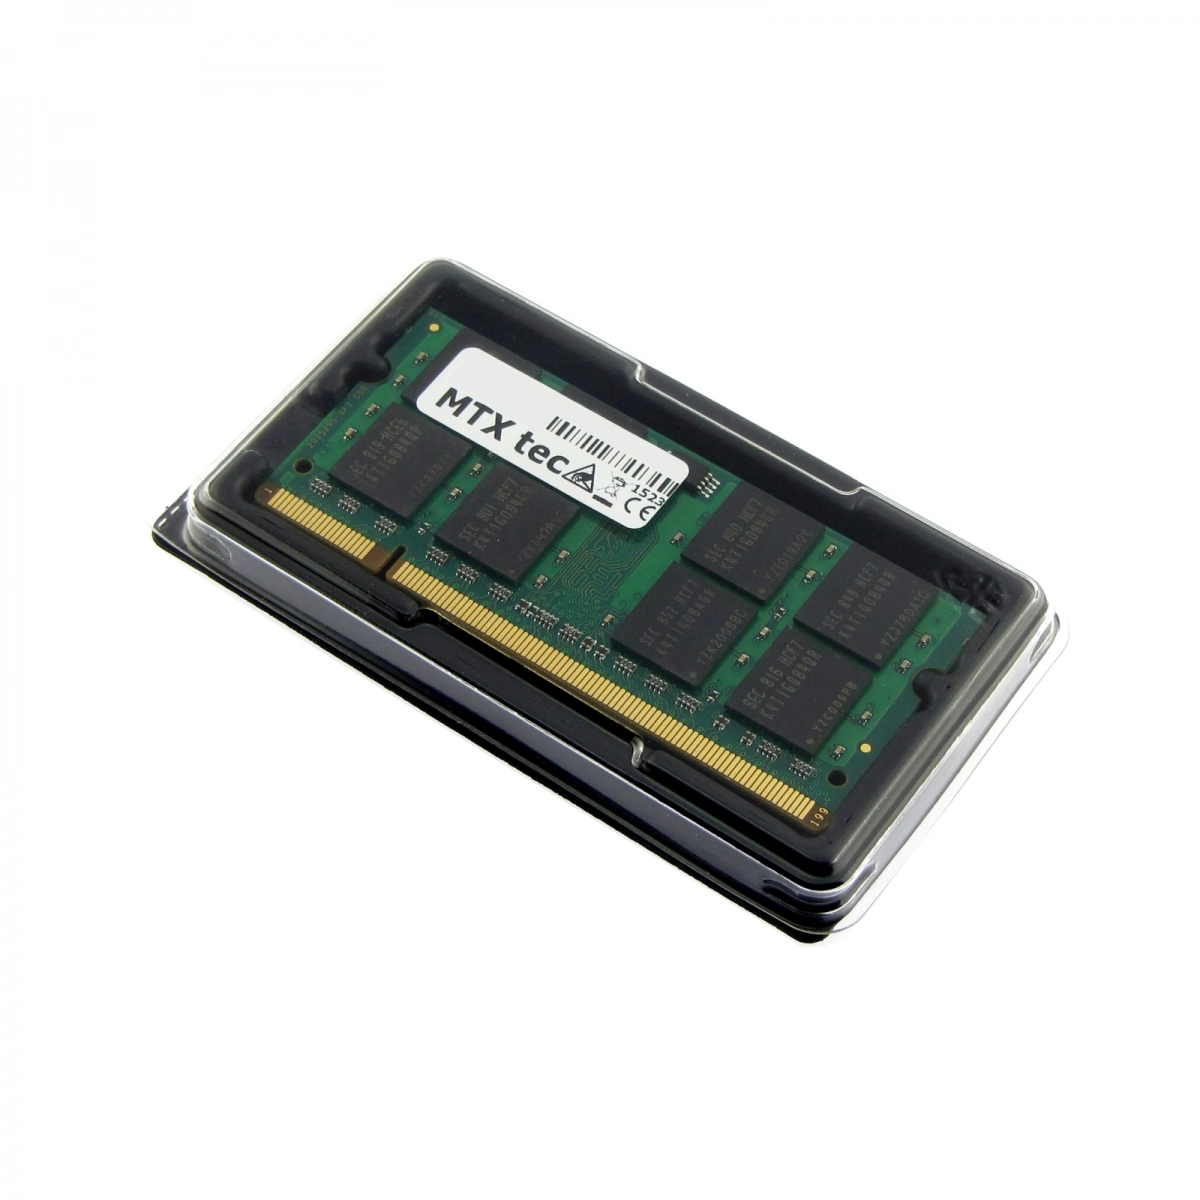 MTXtec Arbeitsspeicher 1 GB RAM für SONY Vaio VGN-N38E/W